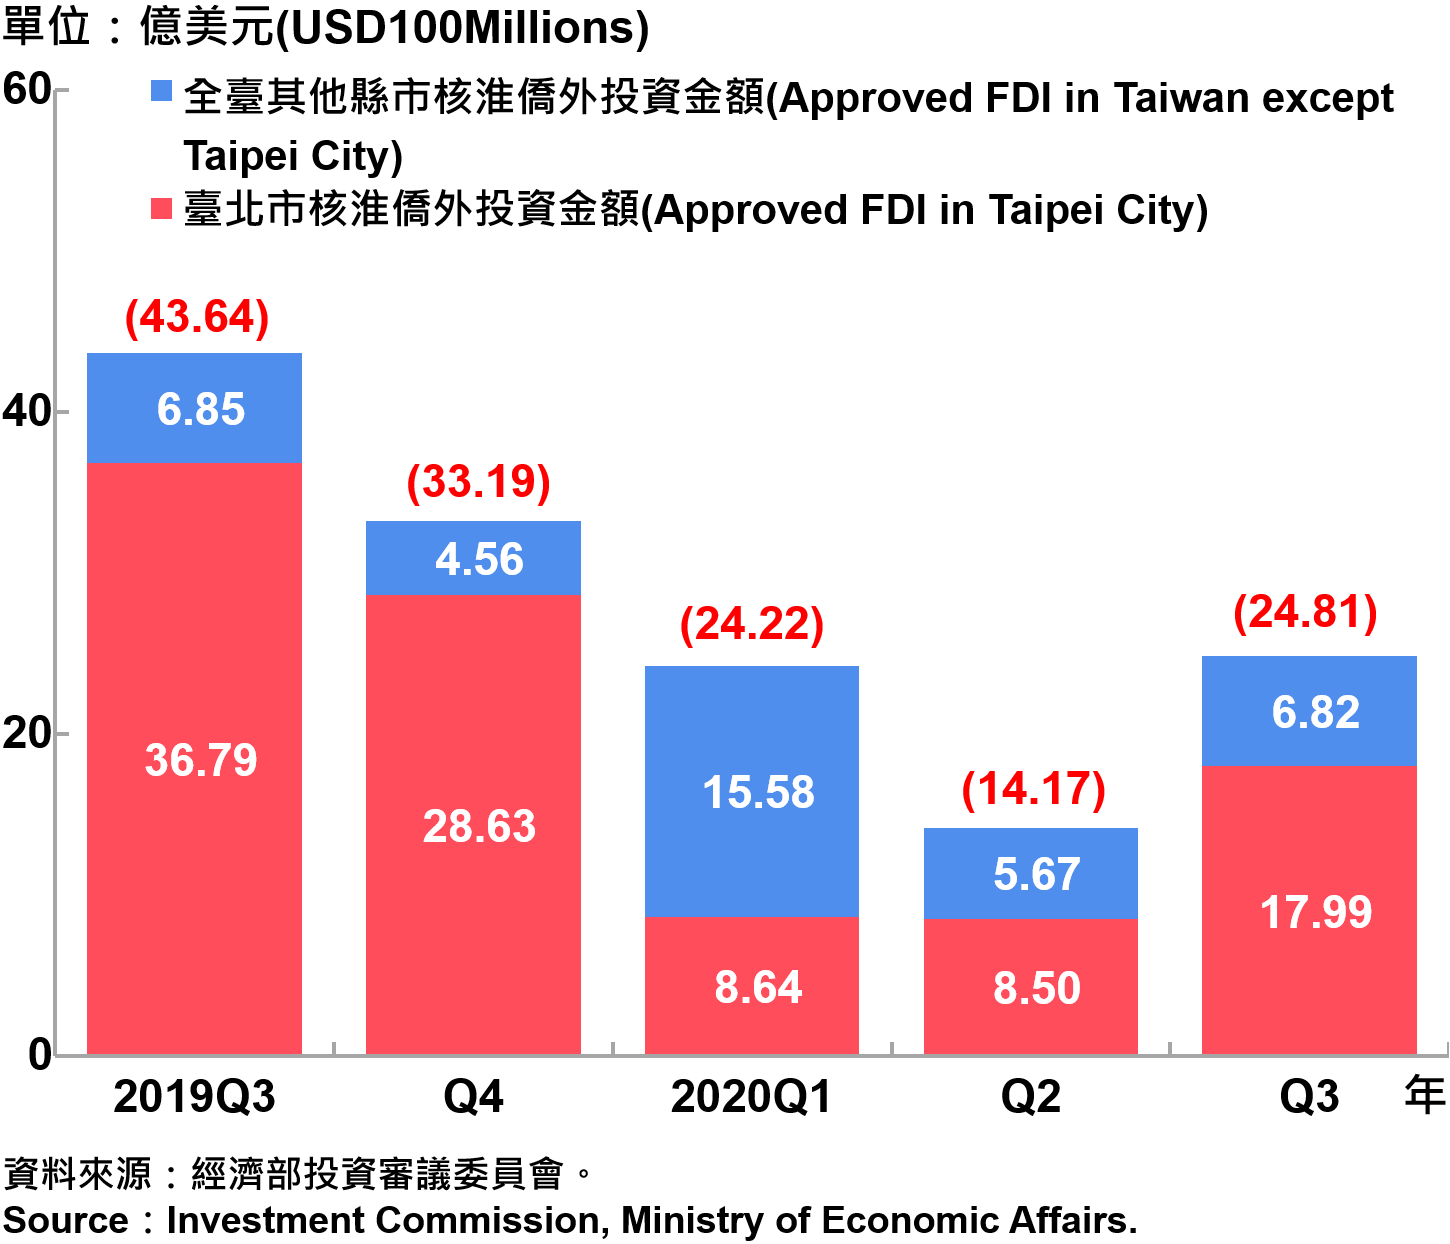 臺北市與全國僑外投資金額—2020Q3 Foreign Direct Investment（FDI）in Taipei City and Taiwan—2020Q3